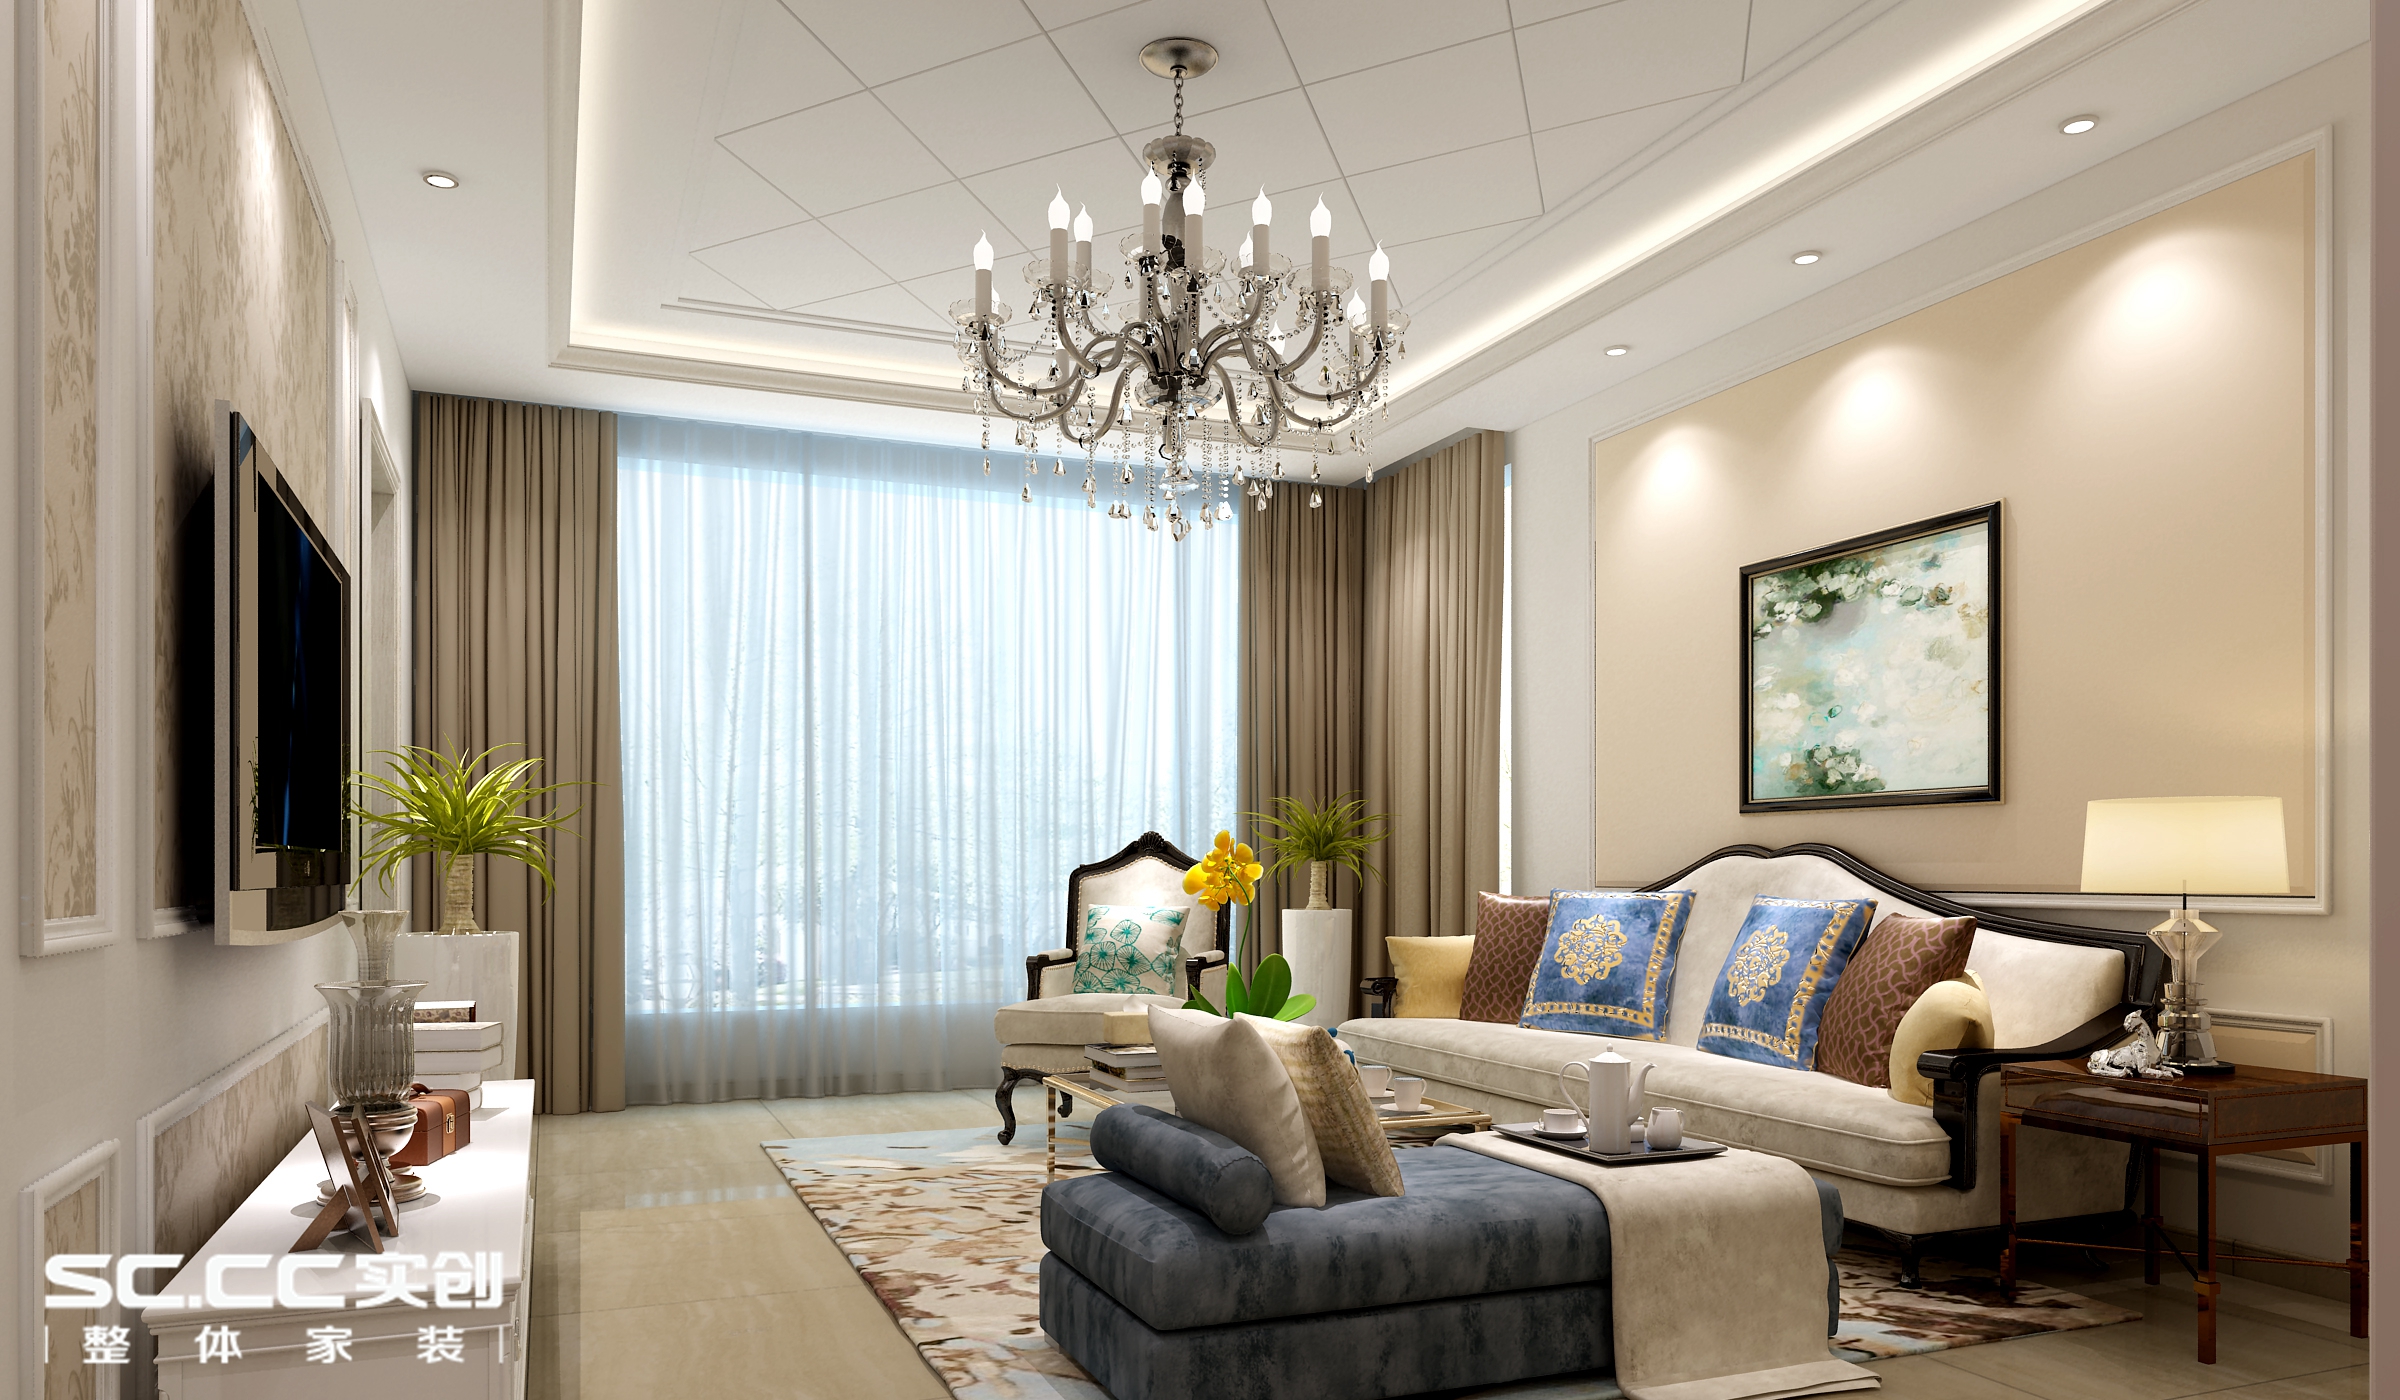 二居 欧式 客厅图片来自哈尔滨实创装饰阿娇在盟科涵舍93平简欧风格二居的分享